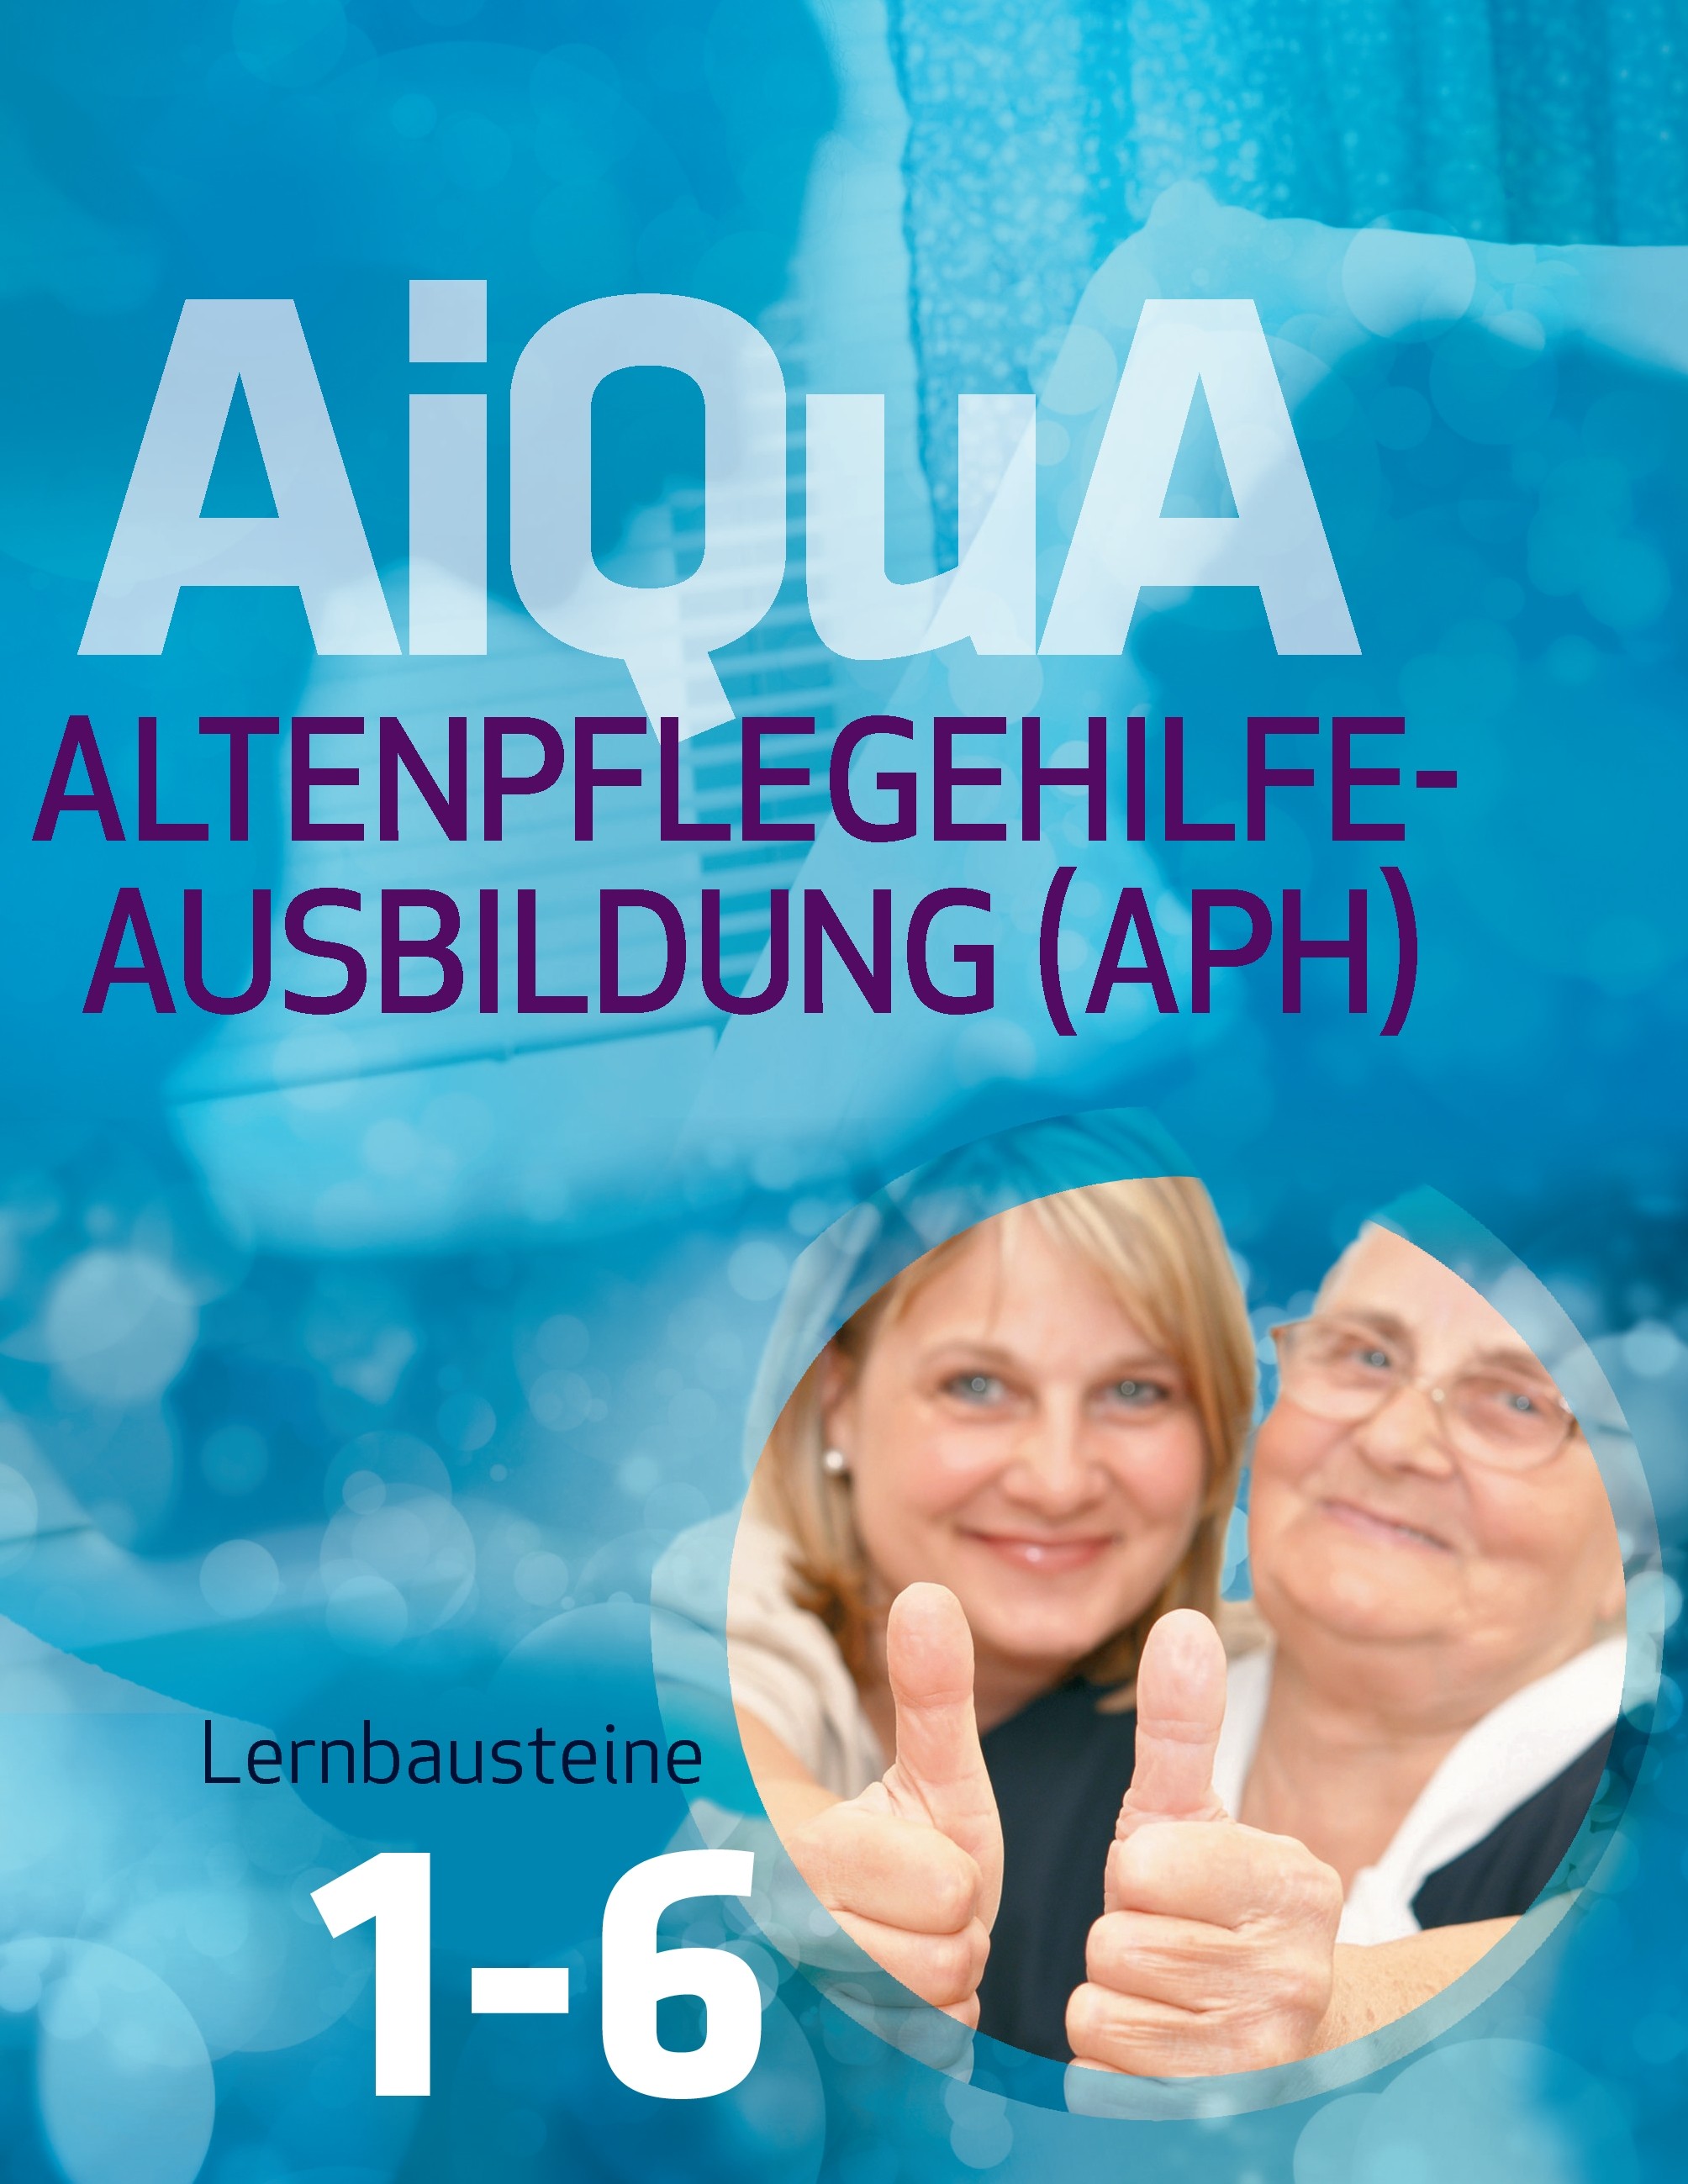 AiQuA - Altenpflegehilfe-Ausbildung (APH)